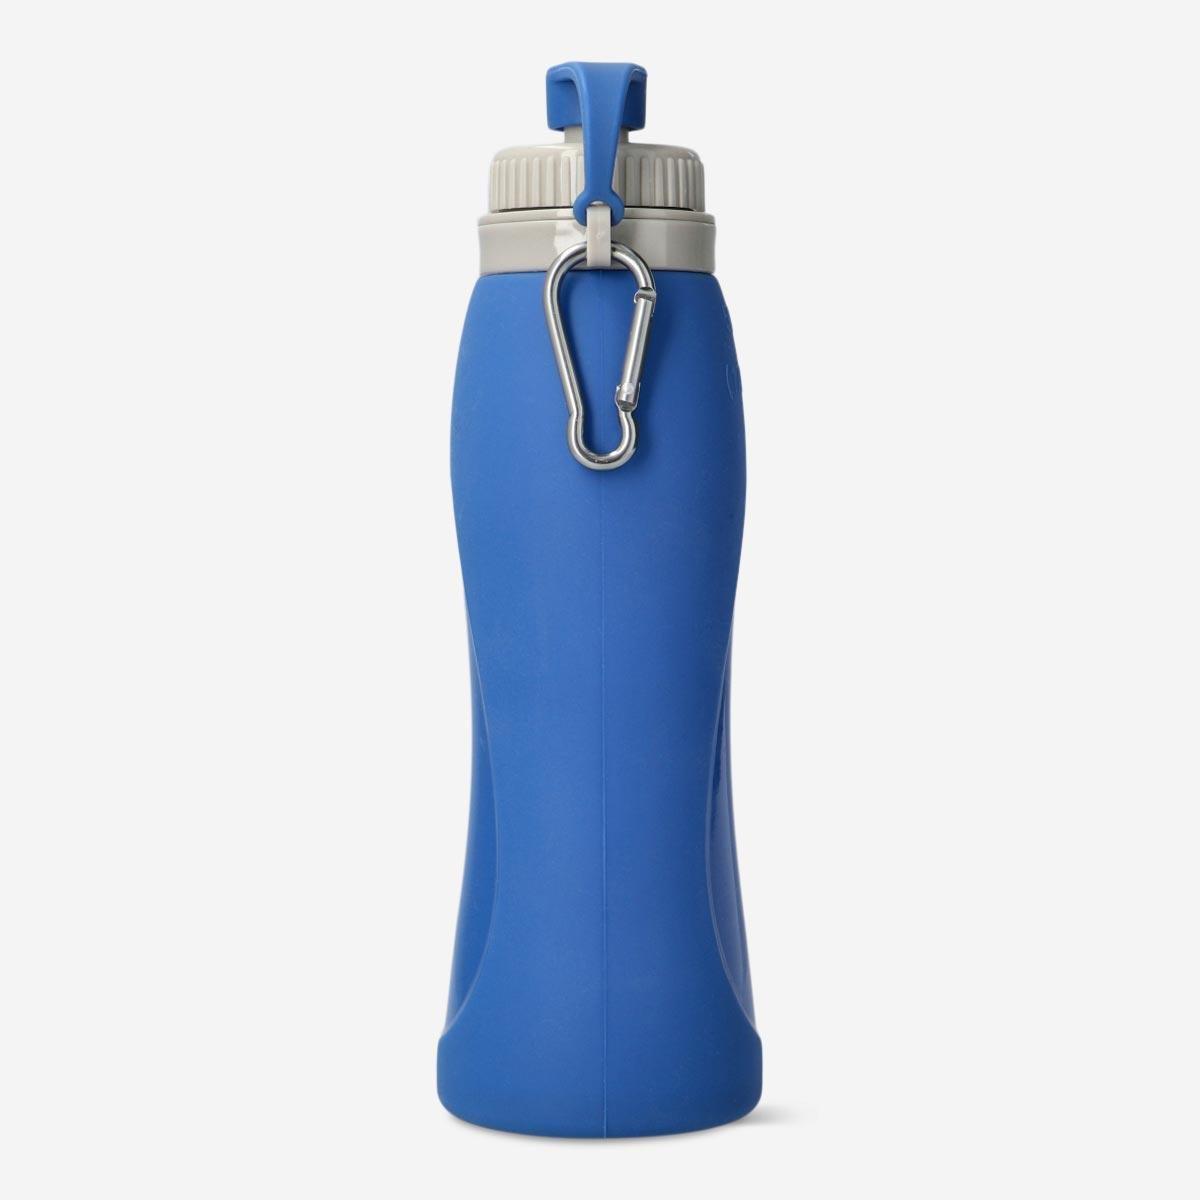 Blue drinking bottle. 500 ml